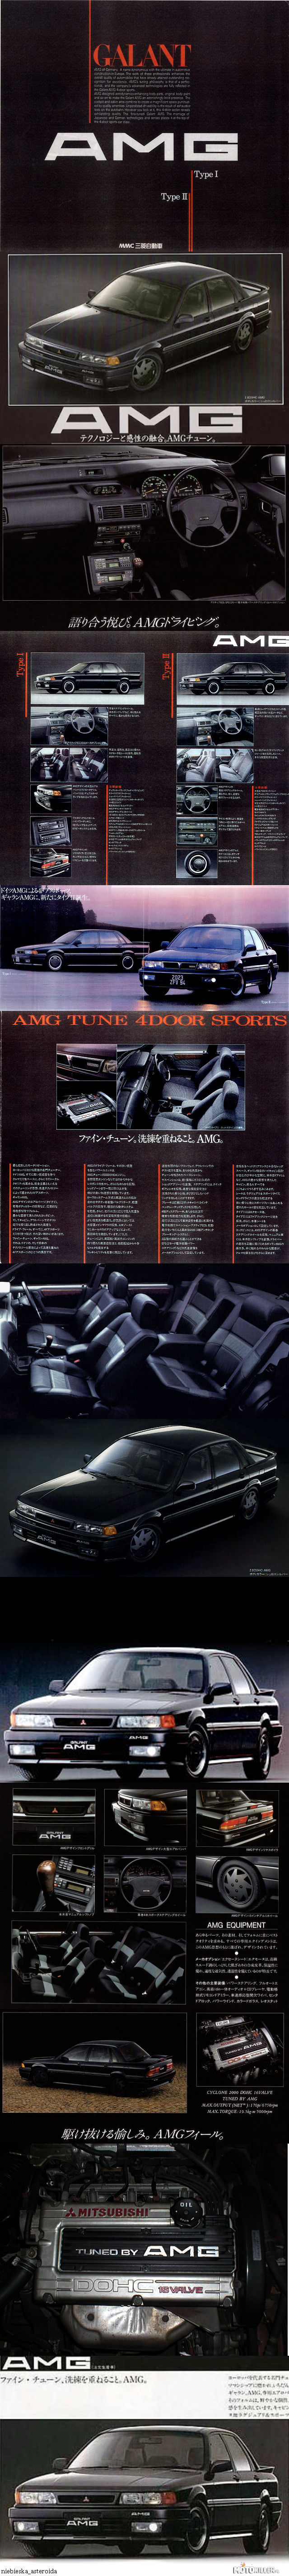 Mitsubishi Galant E33A AMG – Mało kto wie, że AMG zajmowało się też japońskimi samochodami. Jeden z dwóch takich aut to właśnie Mitsubishi Galant. 

Szósta generacja Galanta (wybrana w 1987 r. samochodem roku w Japonii) była produkowana w latach 1987-1993. Wersja AMG trafiła na rynek w październiku 1989 roku, produkowana była na bazie przednionapędowego modelu GTi-16V, z wolnossącym, znanym i cenionym silnikiem 4G63 o pojemności 2.0L oraz mocy 140 KM (w późniejszych latach 6-gen.: 145-160 KM), wyposażonym w 5-biegową skrzynię manualną lub 4-biegowy automat.

Powstały dwa typy wersji AMG - Type I oraz Type II, oprócz ceny (Type II była tańsza) różniły się detalami z zewnątrz i wewnątrz.

AMG wprowadziło oczywiście trochę zmian w silniku (np. ostre wałki rozrządu, nowe tłoki podnoszące poziom kompresji, zmodyfikowany układ dolotowy i wydechowy, przestrojony komputer) dzięki którym moc wzrosła do 170 KM @ 6750 rpm, a moment obrotowy do 191 Nm @ 5000 rpm. Samochód o masie 1220-1250 kg (w zależności od typu wersji [I-II] oraz skrzyni biegów), do setki przyspieszał w około 8 sekund. Modyfikacjom uległo też zawieszenie i skrzynia biegów. Zmiany objęły również wnętrze.

Od 1989 r. wyprodukowanych i sprzedanych zostało około 1400 sztuk (Type I + Type II). Ostatnie 10 sztuk sprzedano w marcu 1992 roku. 